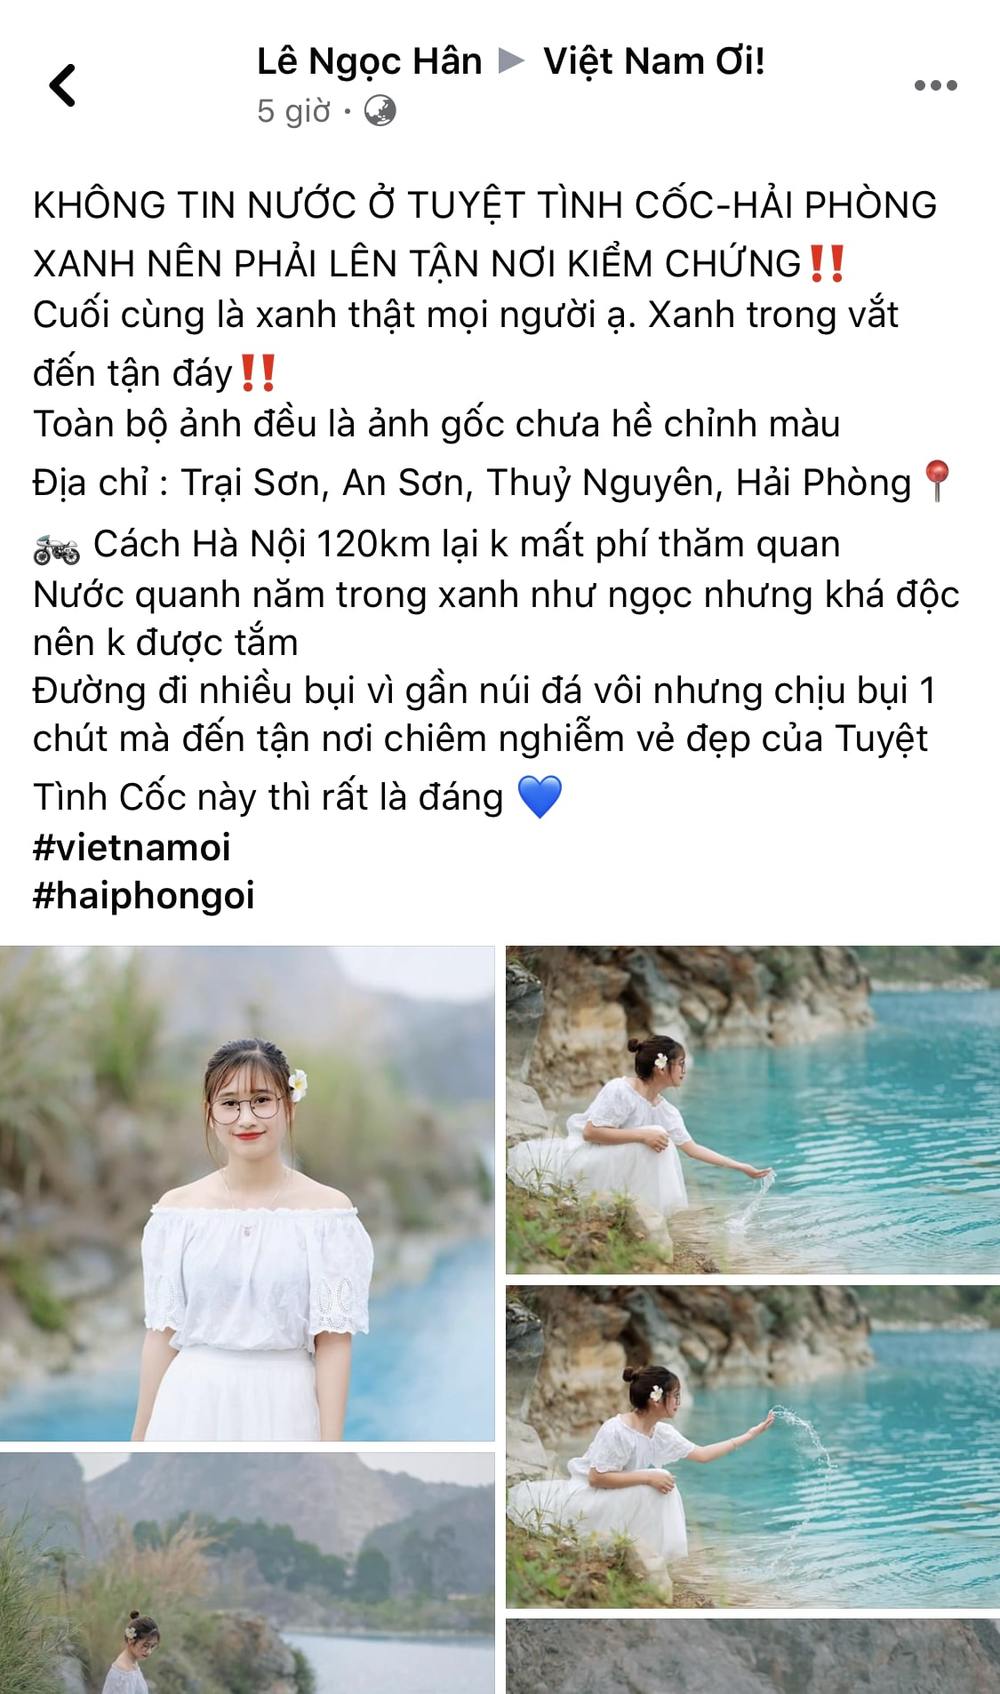  
Bài đăng của thành viên Việt Nam Ơi. (Ảnh chụp màn hình)